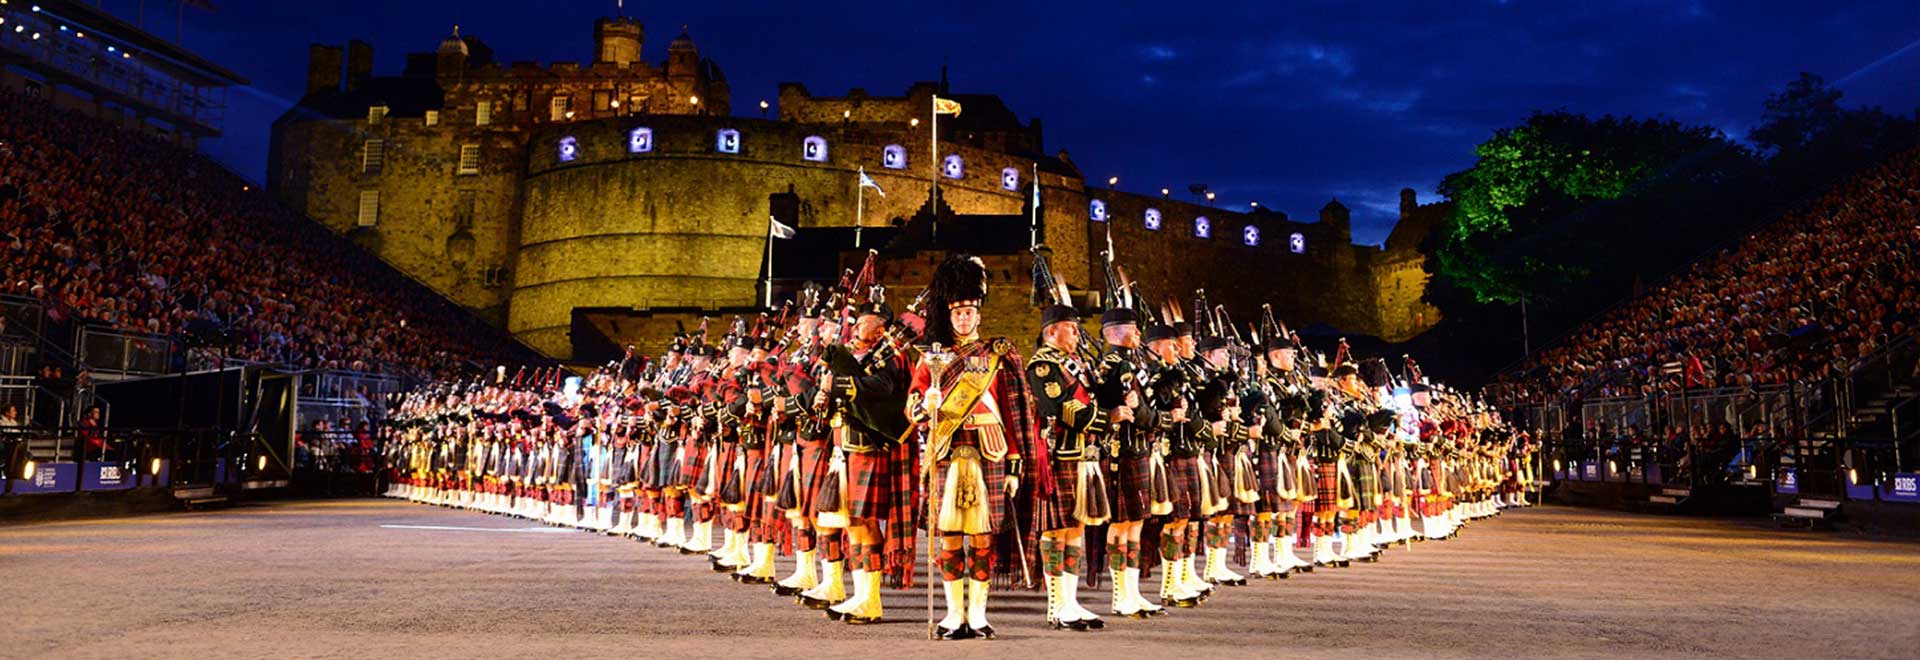 Đội náo viên ống sáo đa sắc thái tại Edinburgh Military Tattoo:
Khám phá những chiếc ống sáo đầy màu sắc và sự tinh tế của đội náo viên đến từ nhiều quốc gia khác nhau, họ sẽ mang lại những tiết mục vô cùng ấn tượng và đầy thú vị trong lễ hội Edinburgh Military Tattoo năm